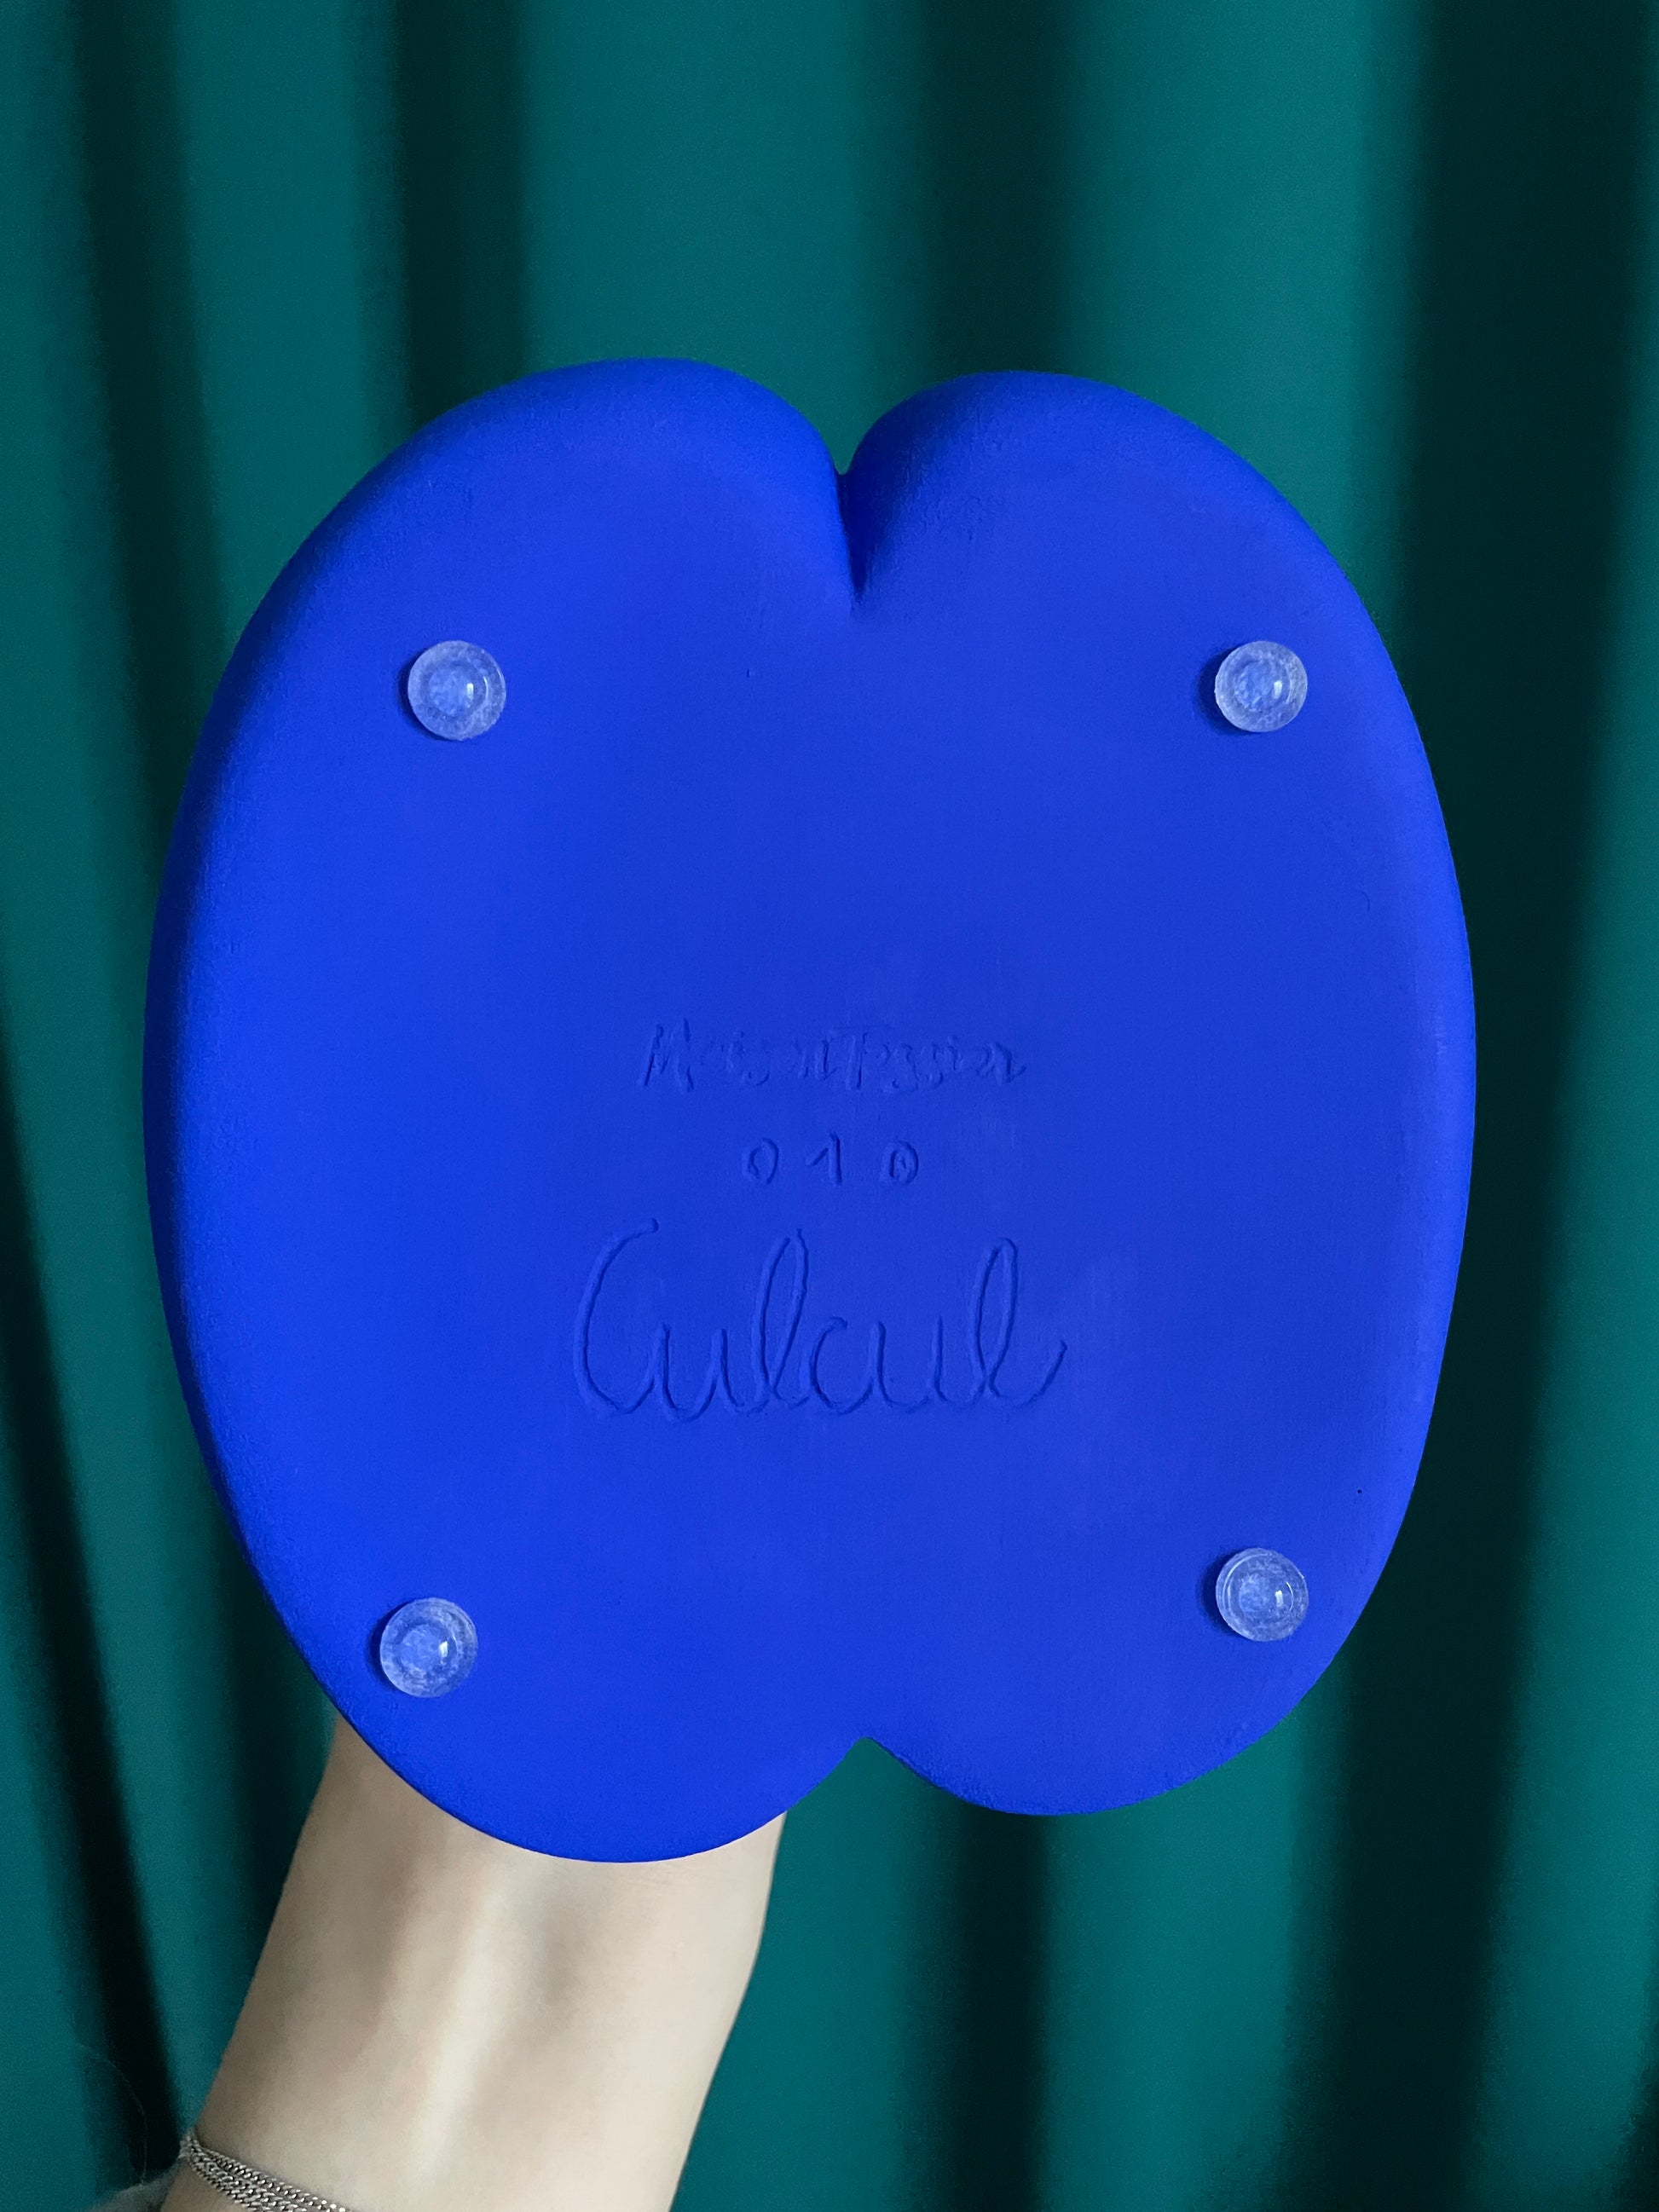 Exemple de gravure personnalisée « Culcul » sous le pot Petit Fessier de Maison Tessier couleur Bleu Klein, sur fond vert émeraude